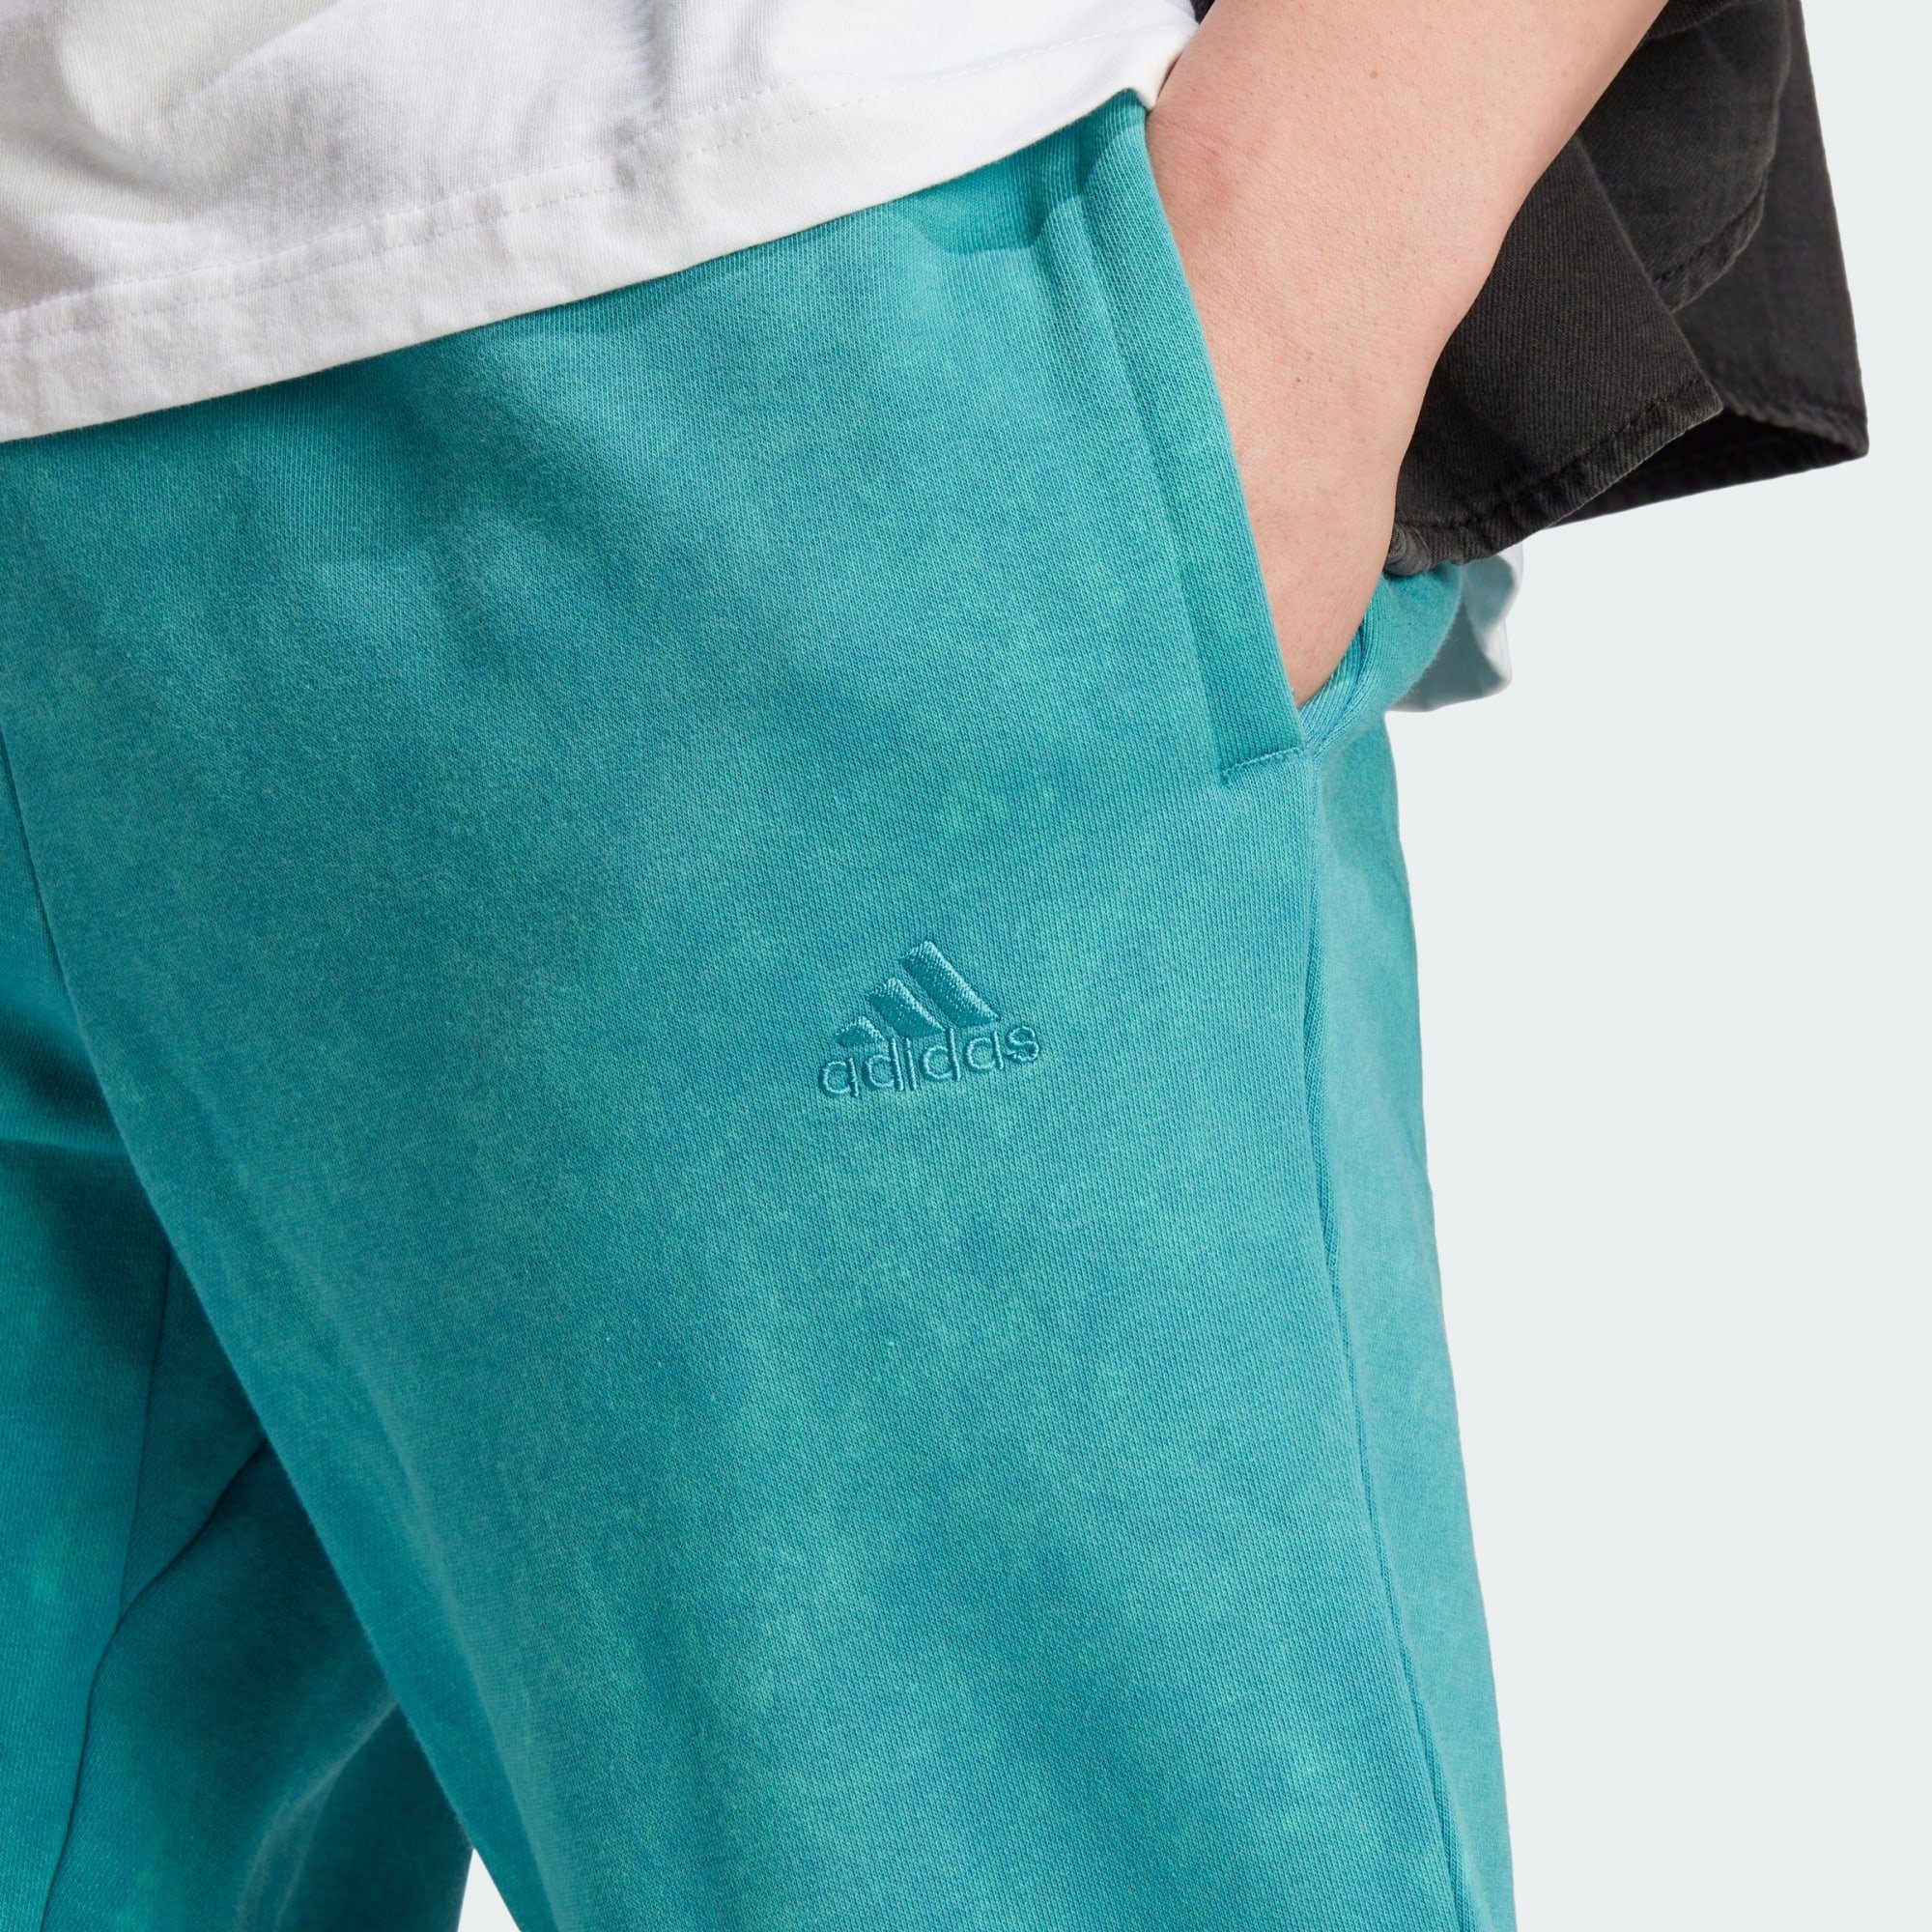 HOSE Jogginghose GARMENT SZN WASH Arctic ALL Fusion Sportswear adidas